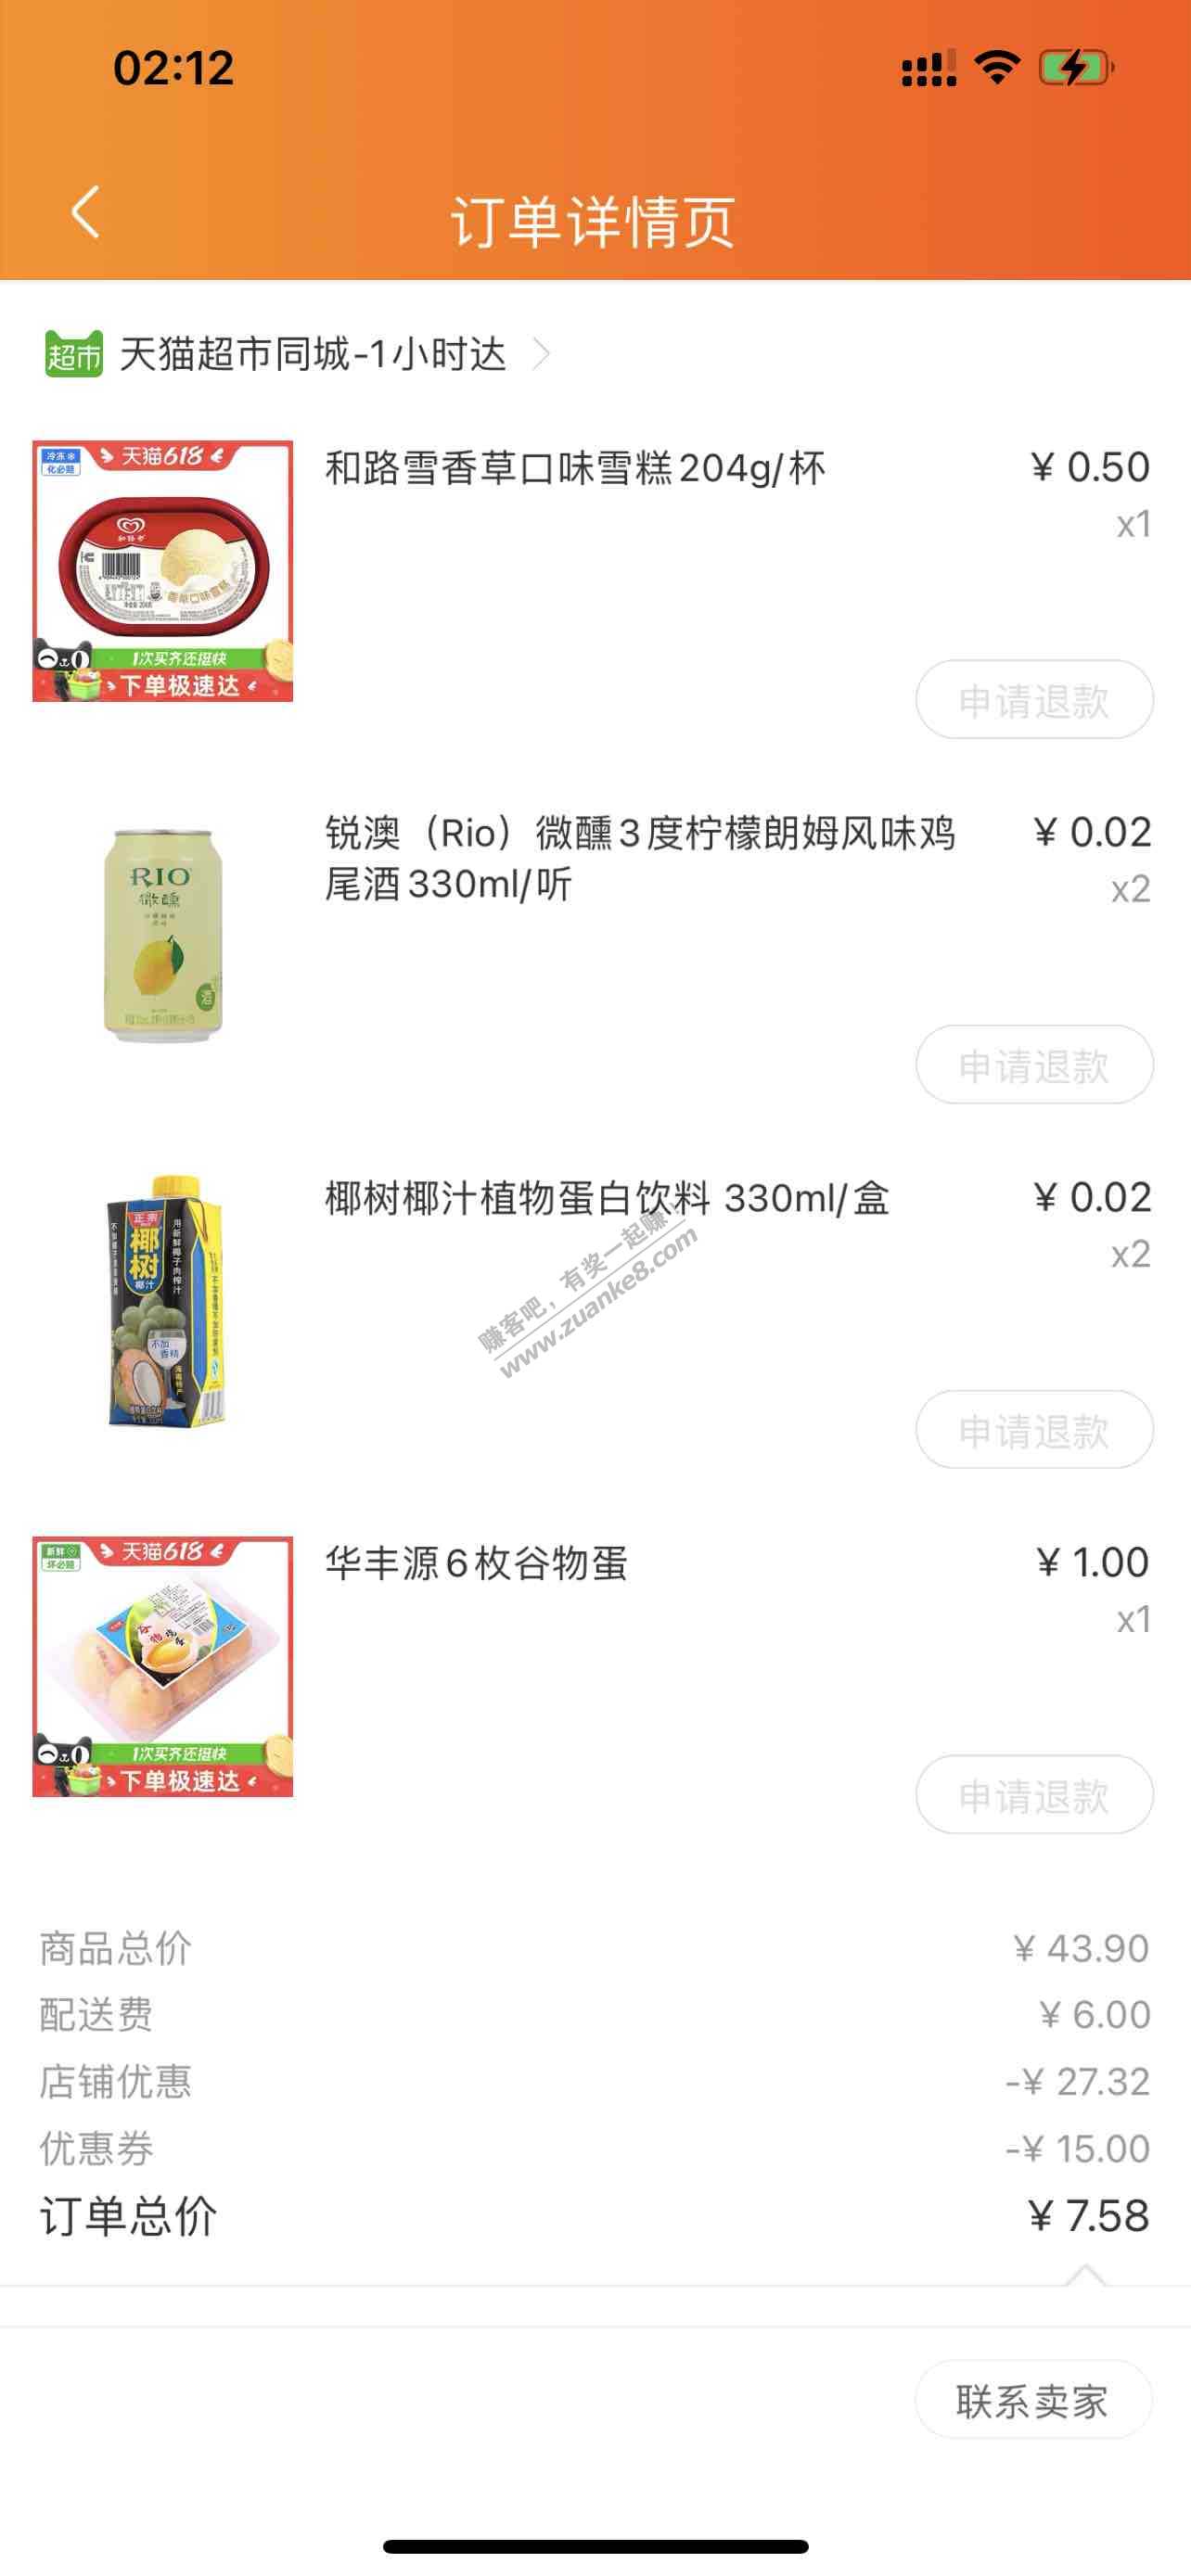 天猫超市-付款7.58-惠小助(52huixz.com)